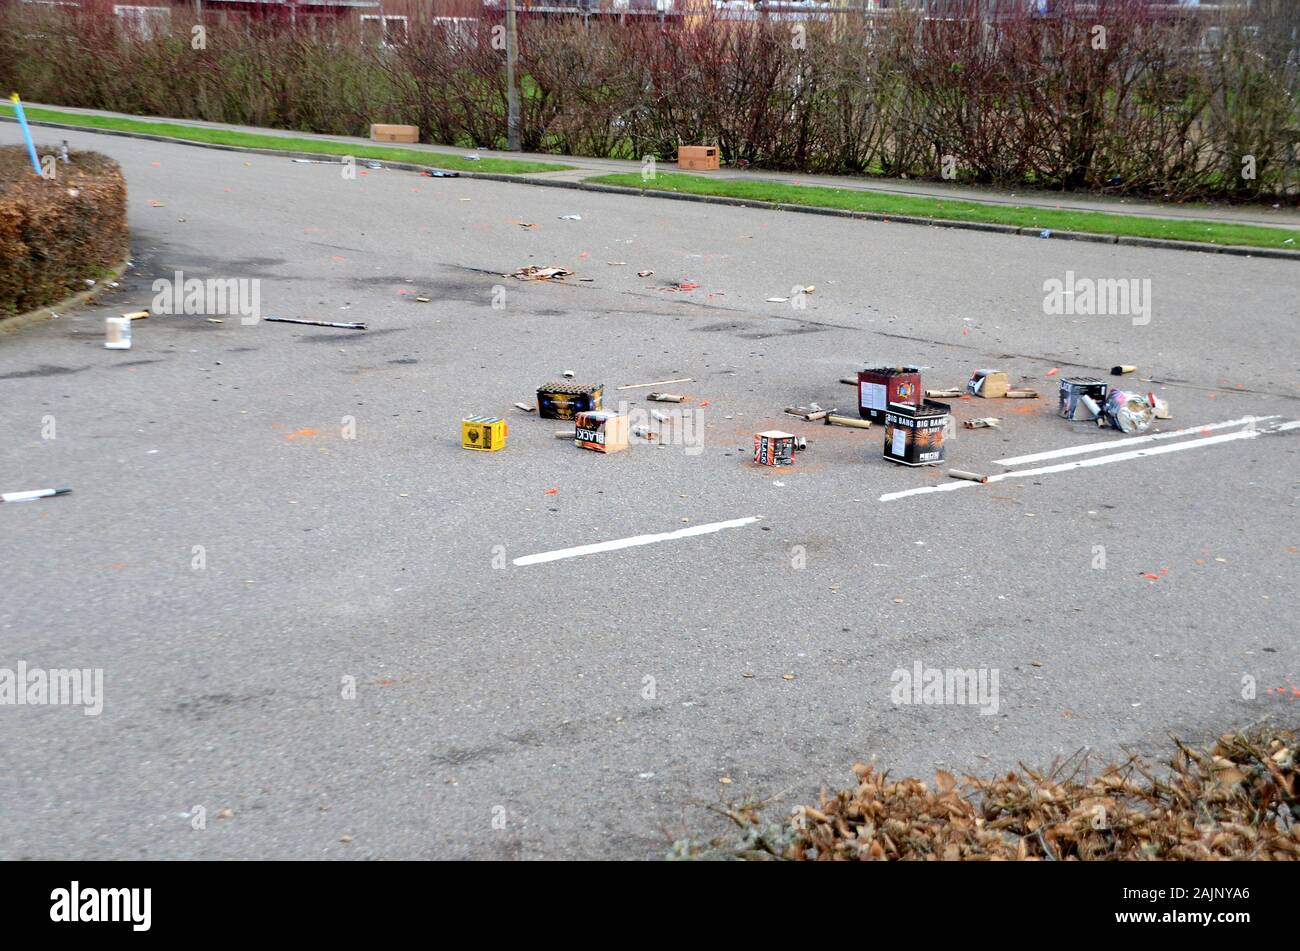 Sonderborg, Dinamarca - 1 de enero de 2020: los residuos después de Año Nuevo con fuegos artificiales flotan en la calle Foto de stock